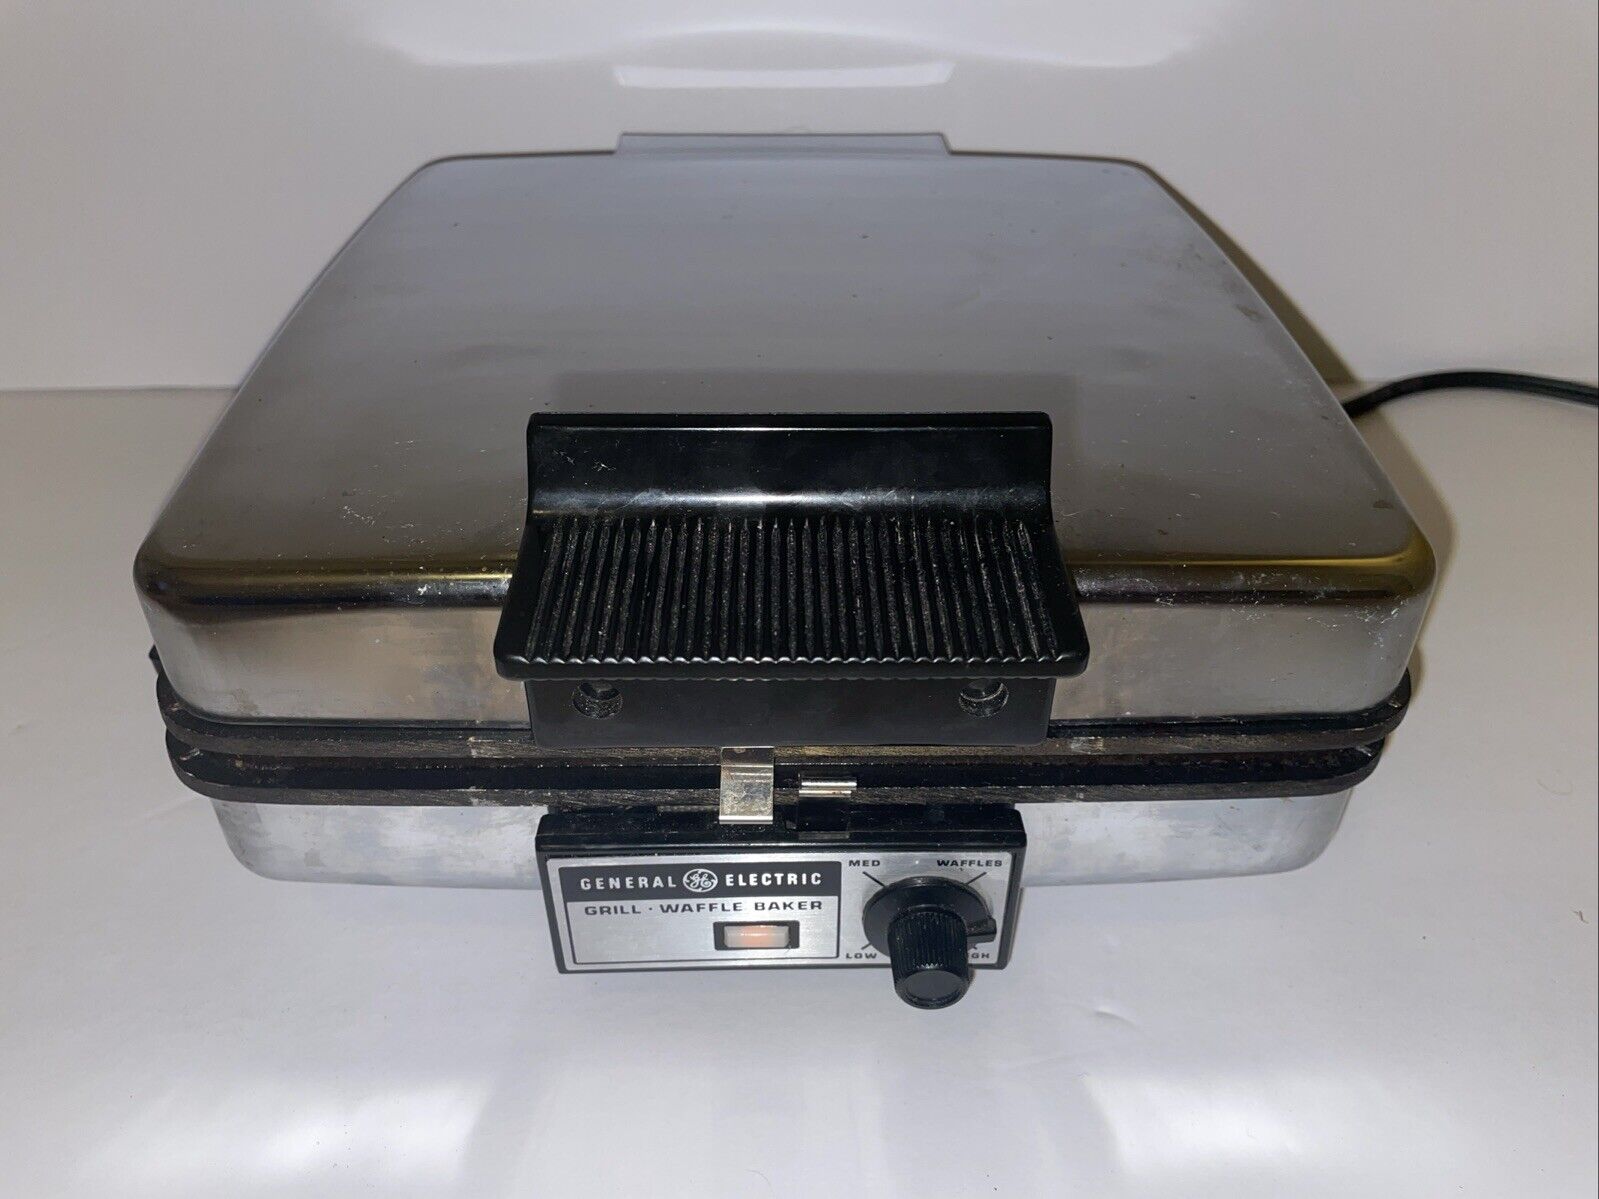 Vintage GE General Electric Griddle Iron Waffle Maker Baker Model A2G48T Tested